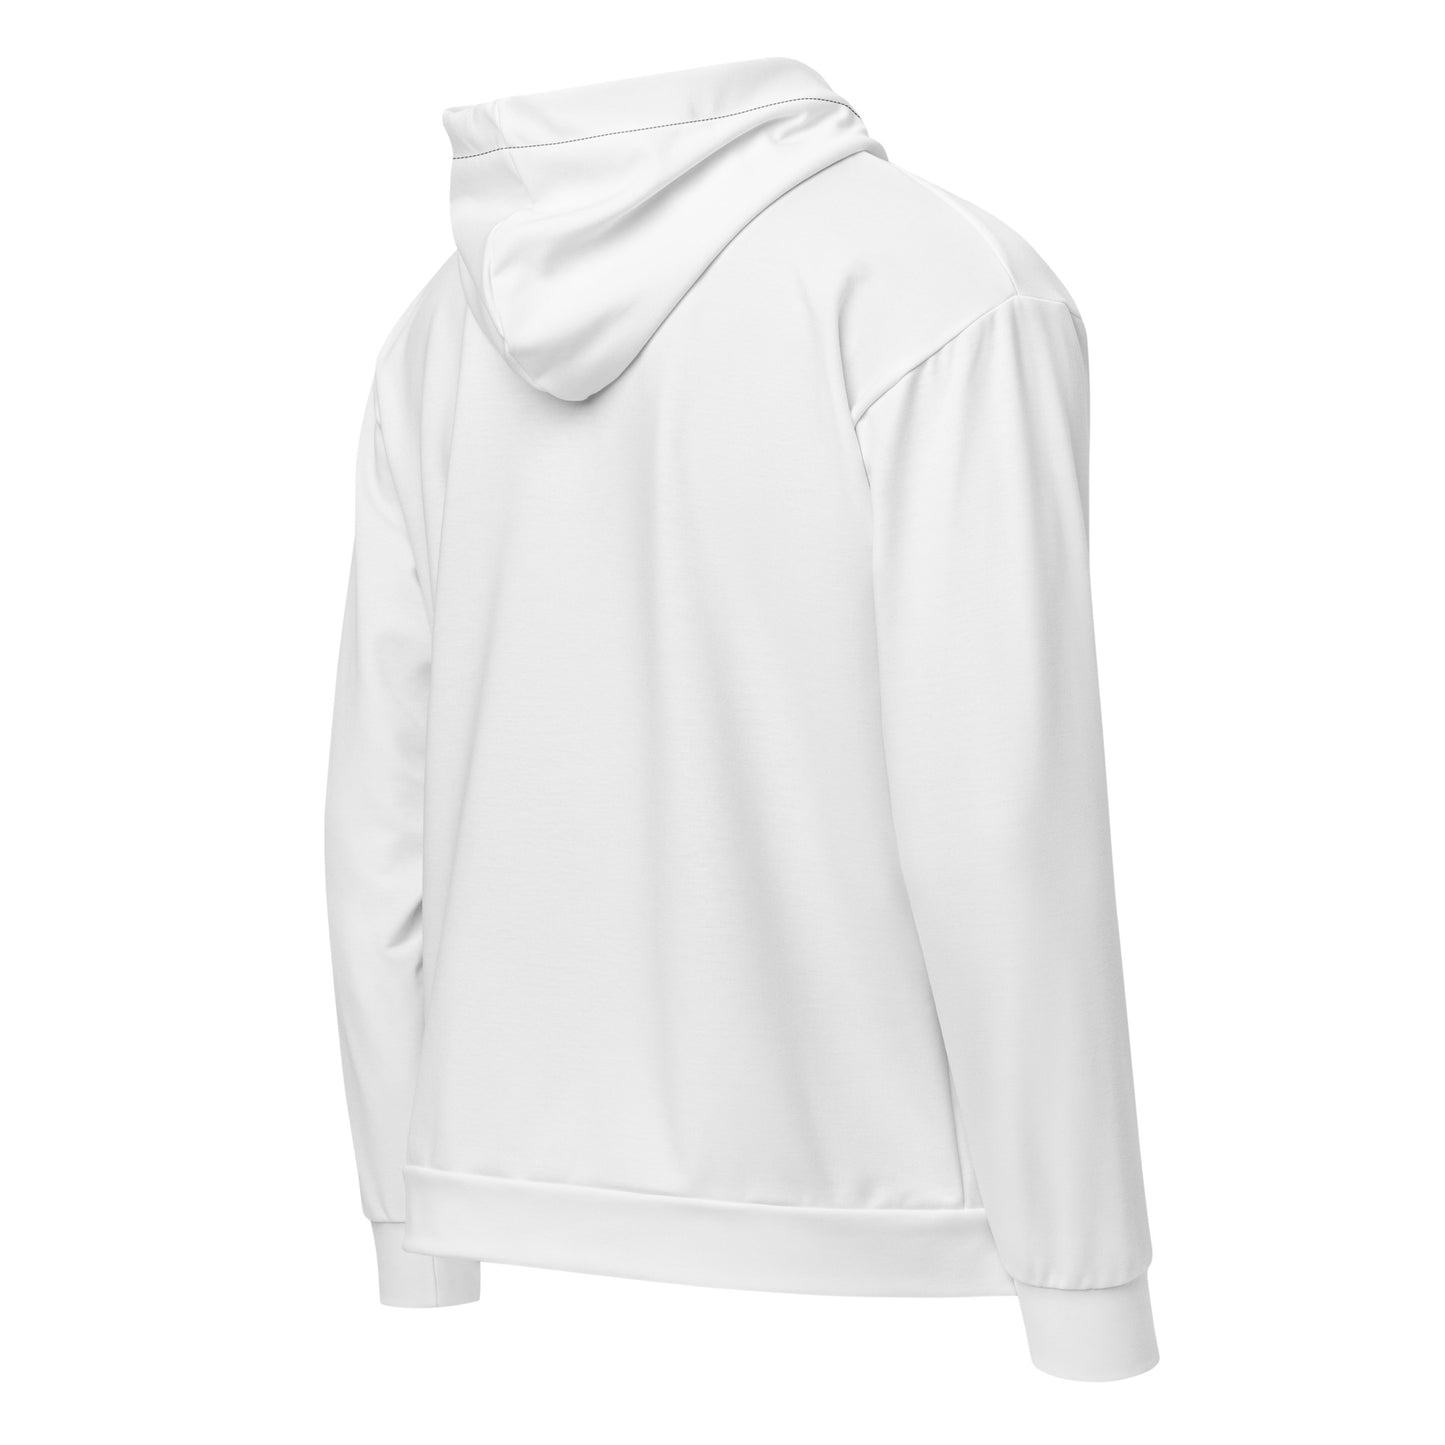 FAFOK9™ Unisex zip hoodie